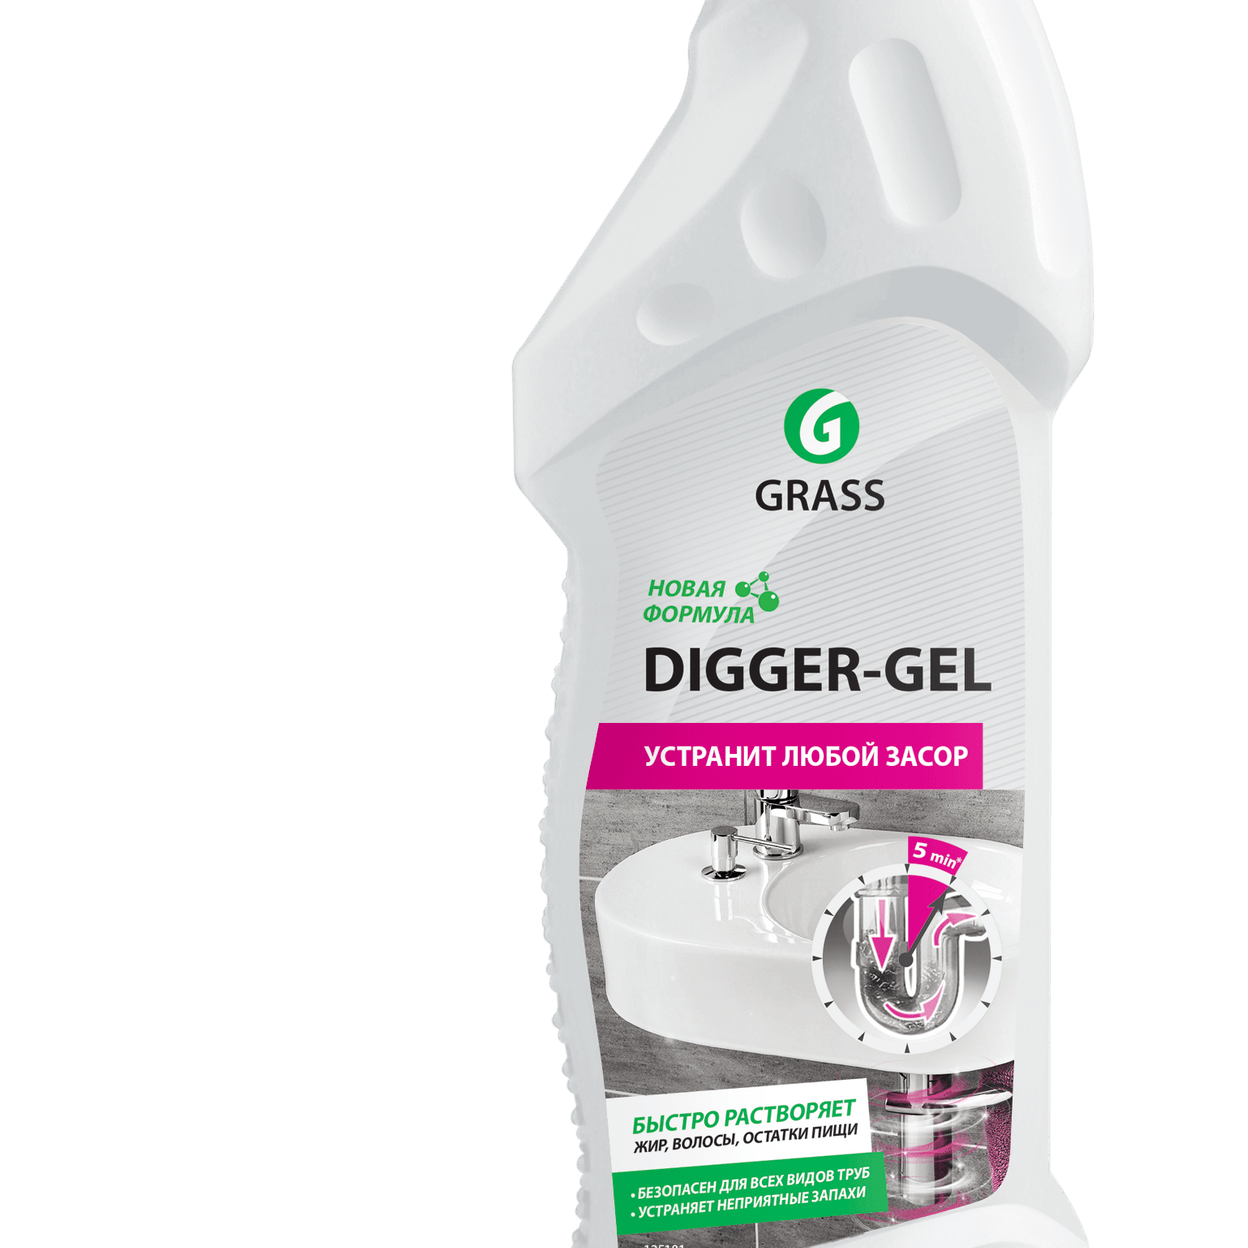 Grass "Digger-Gel" гель для чистки труб 750 мл. 125181 Grass ср-во для прочистки труб "Digger-Gel" 750 мл, шт. Средство Грасс диггер гель для прочистки канализационных труб 750 мл. Диггер гель 750мл.